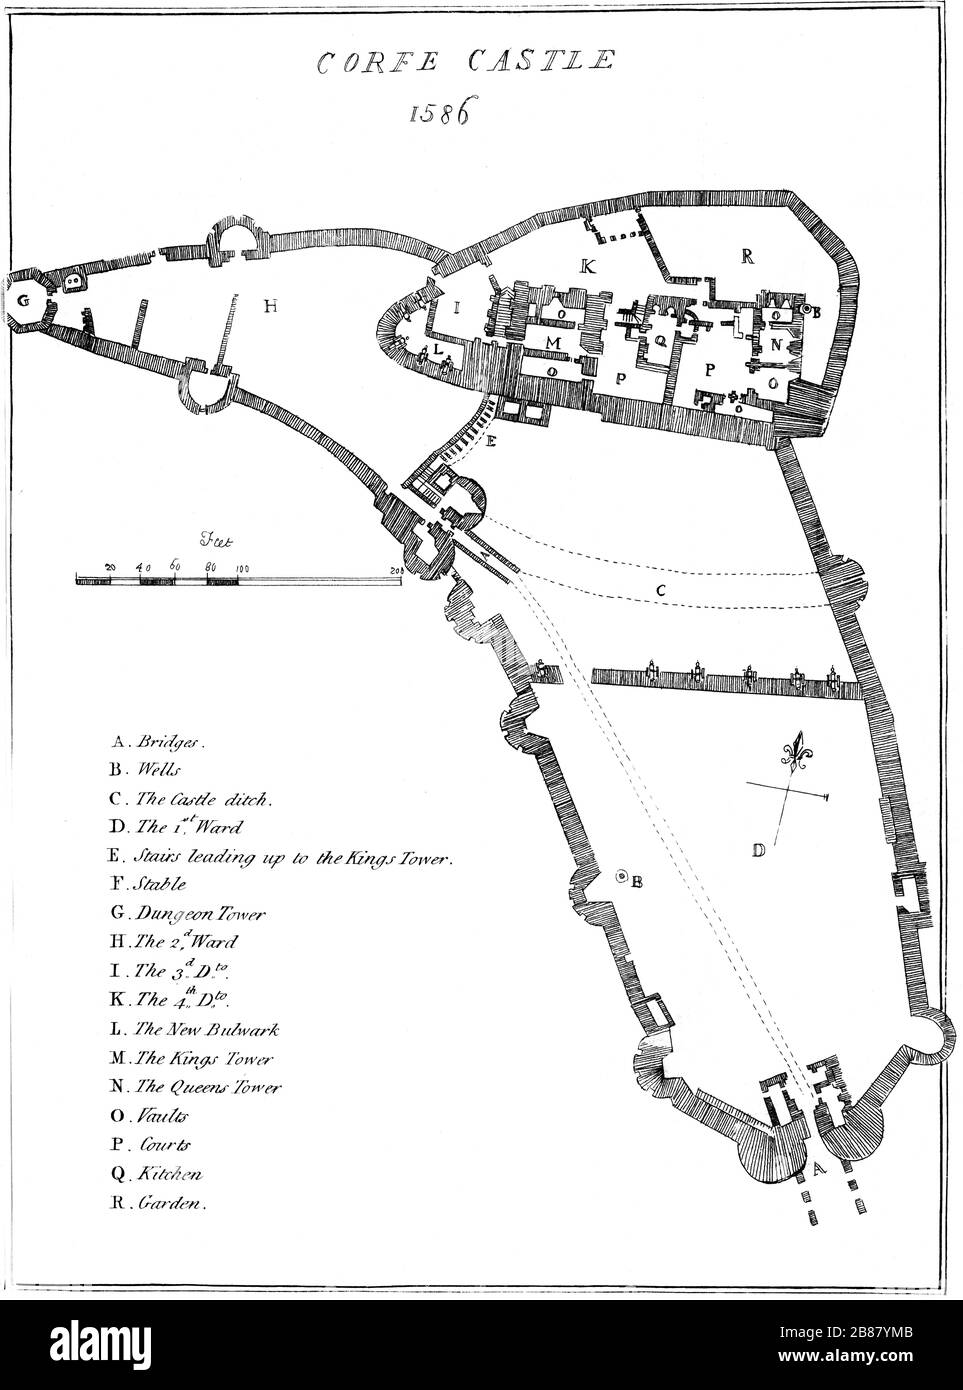 Un plan del Castillo de Corfe, Dorset en 1586 escaneó a alta resolución de un libro publicado en 1784. Se cree que esta imagen está libre de todos los derechos de autor. Foto de stock